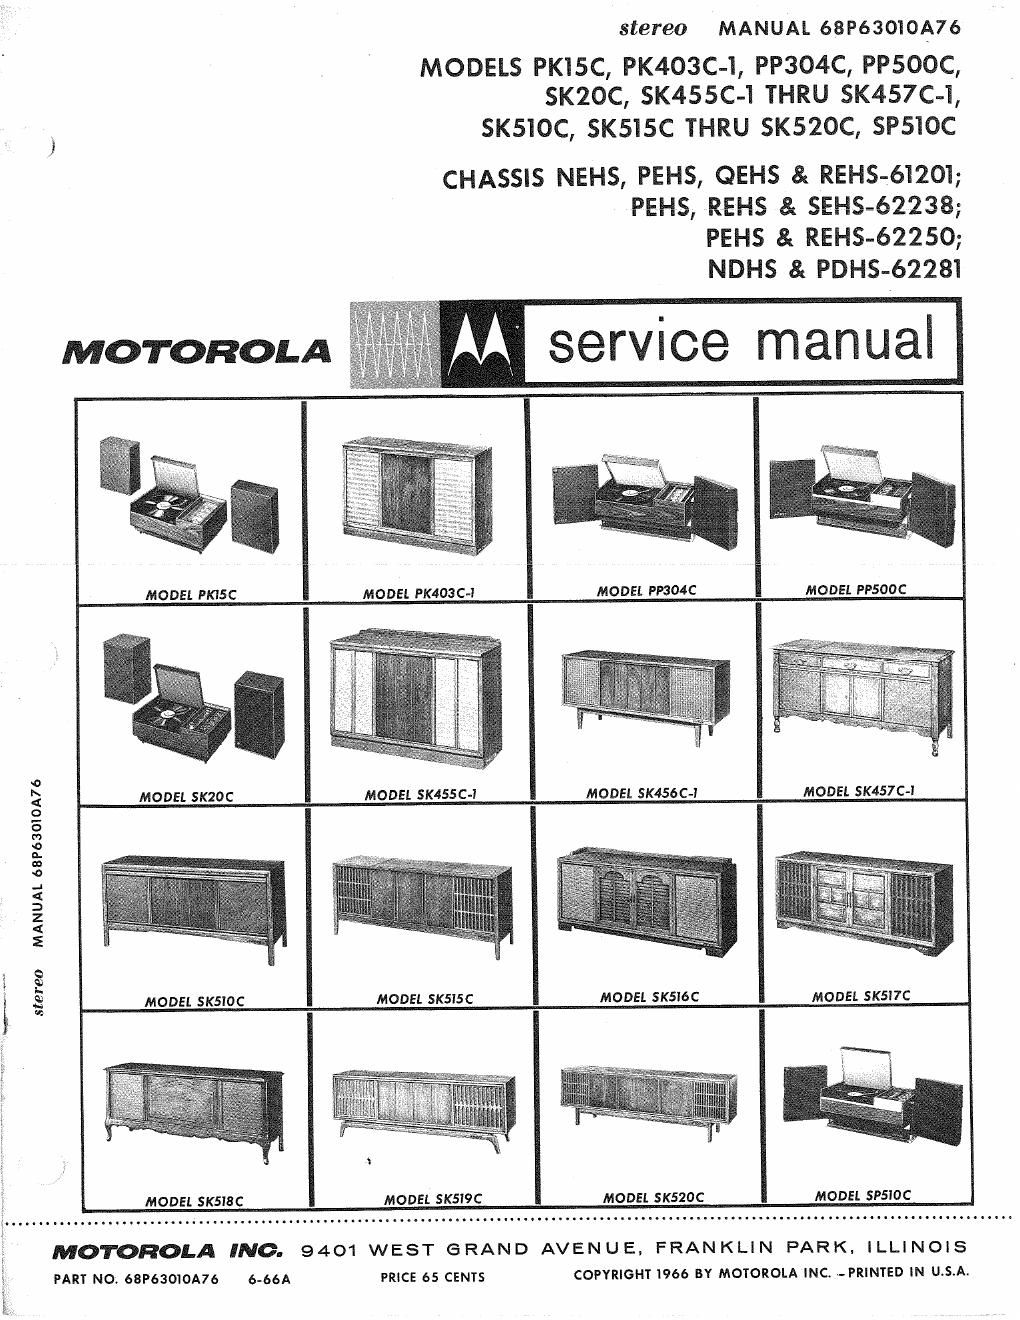 motorola pp 304 c service manual